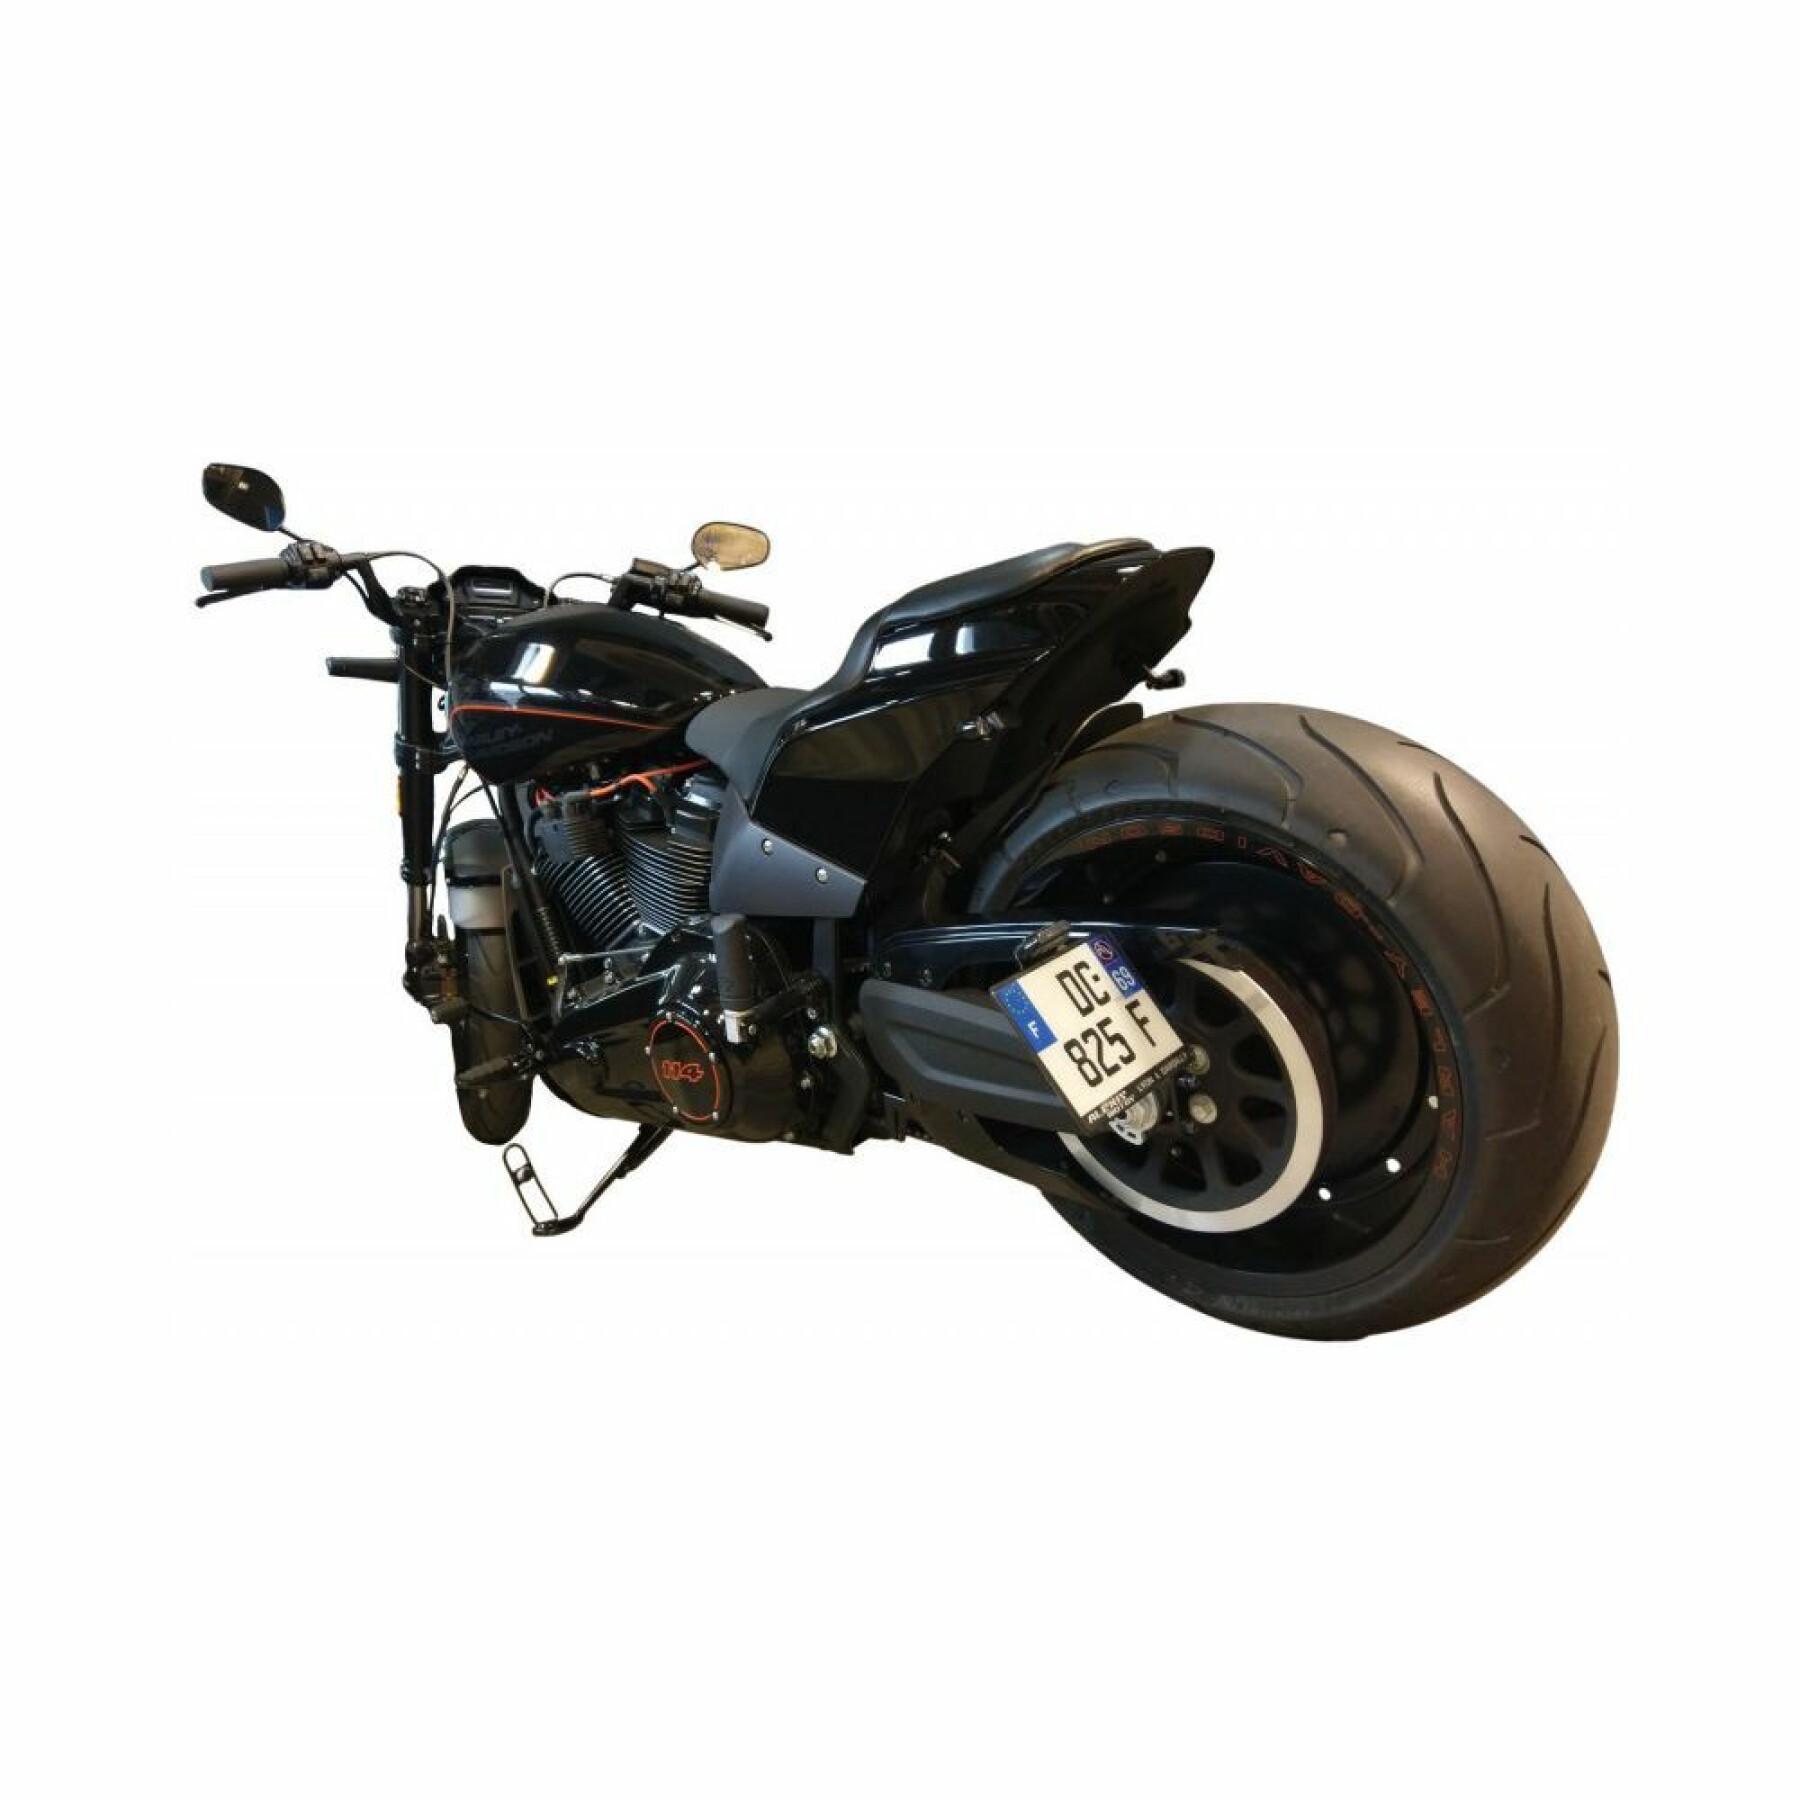 Uchwyt na tablicę rejestracyjną motocykla Btob Moto Fxdr 114 18+